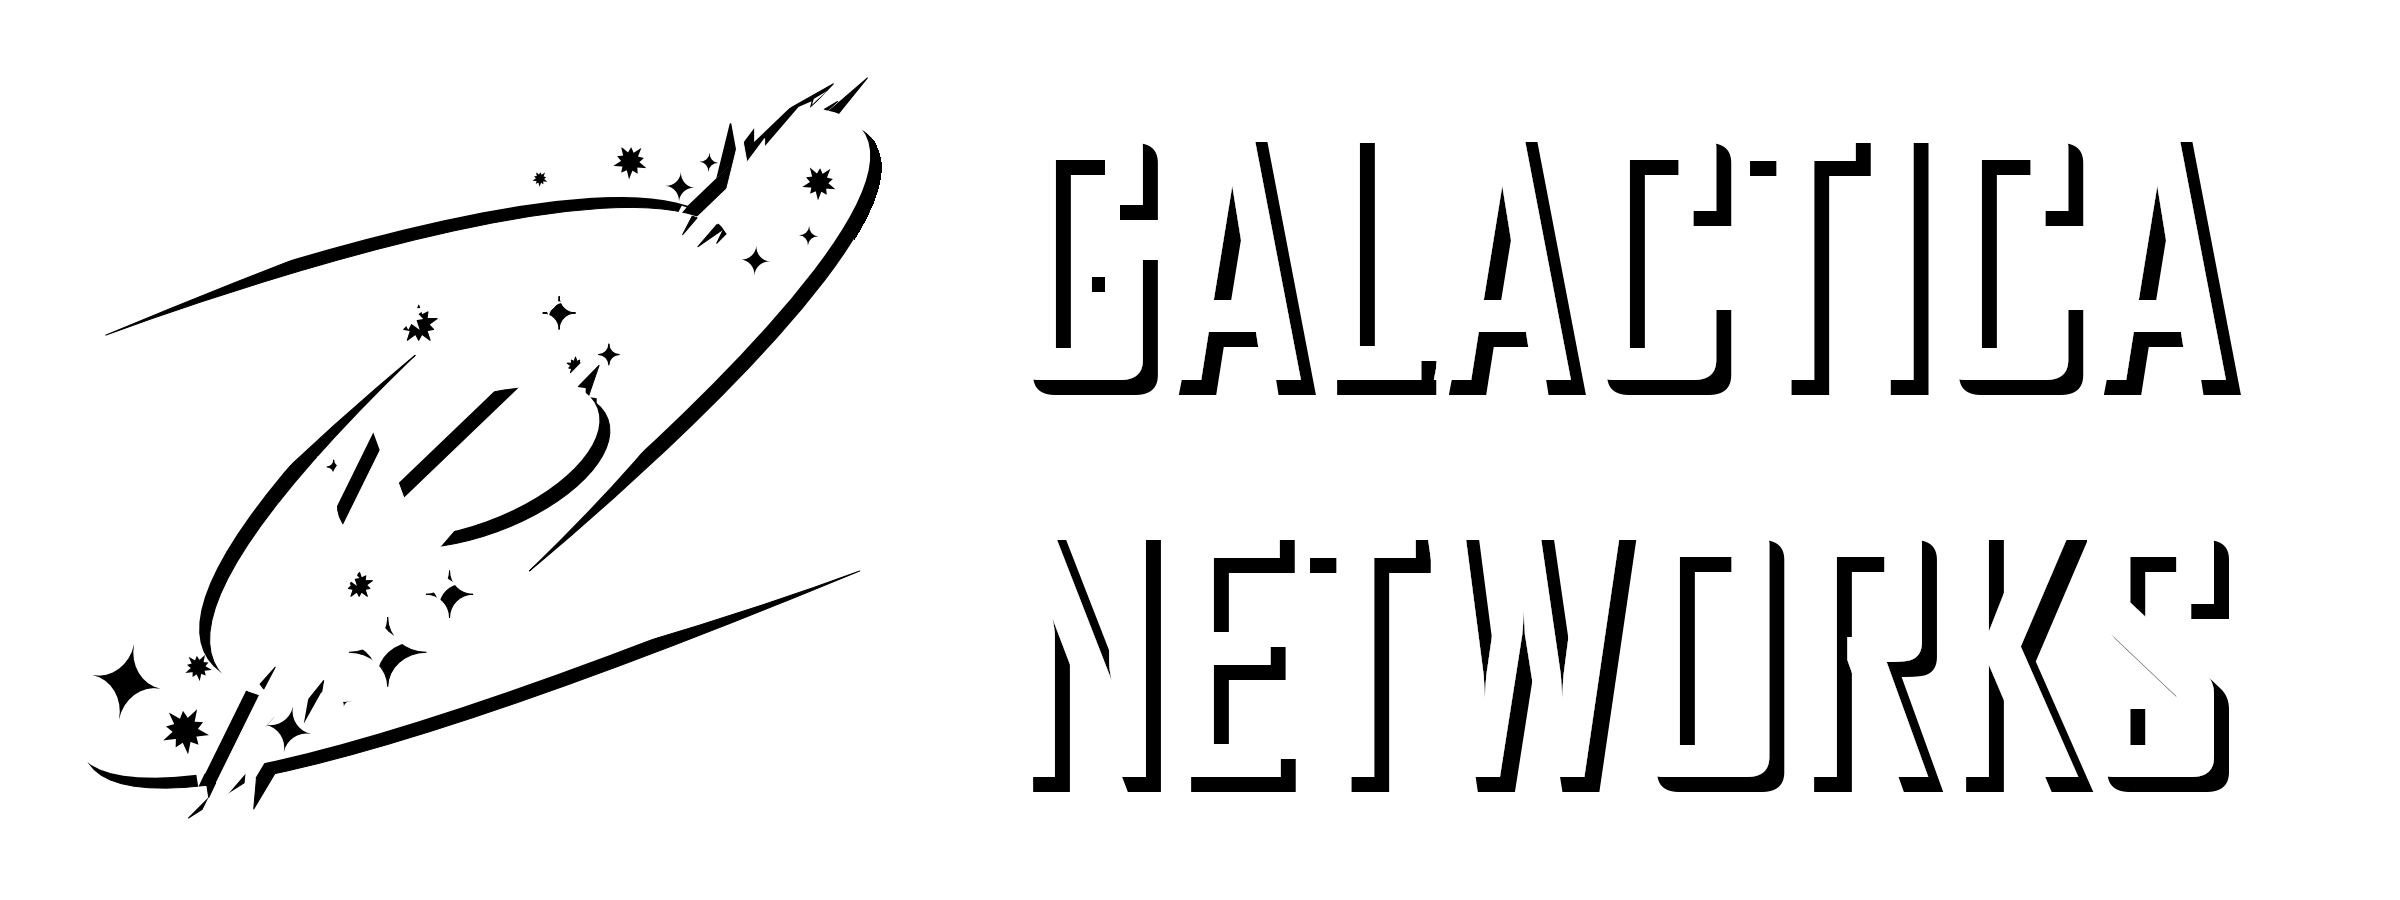 Steam Workshop Galactica Networks Darkrp Main